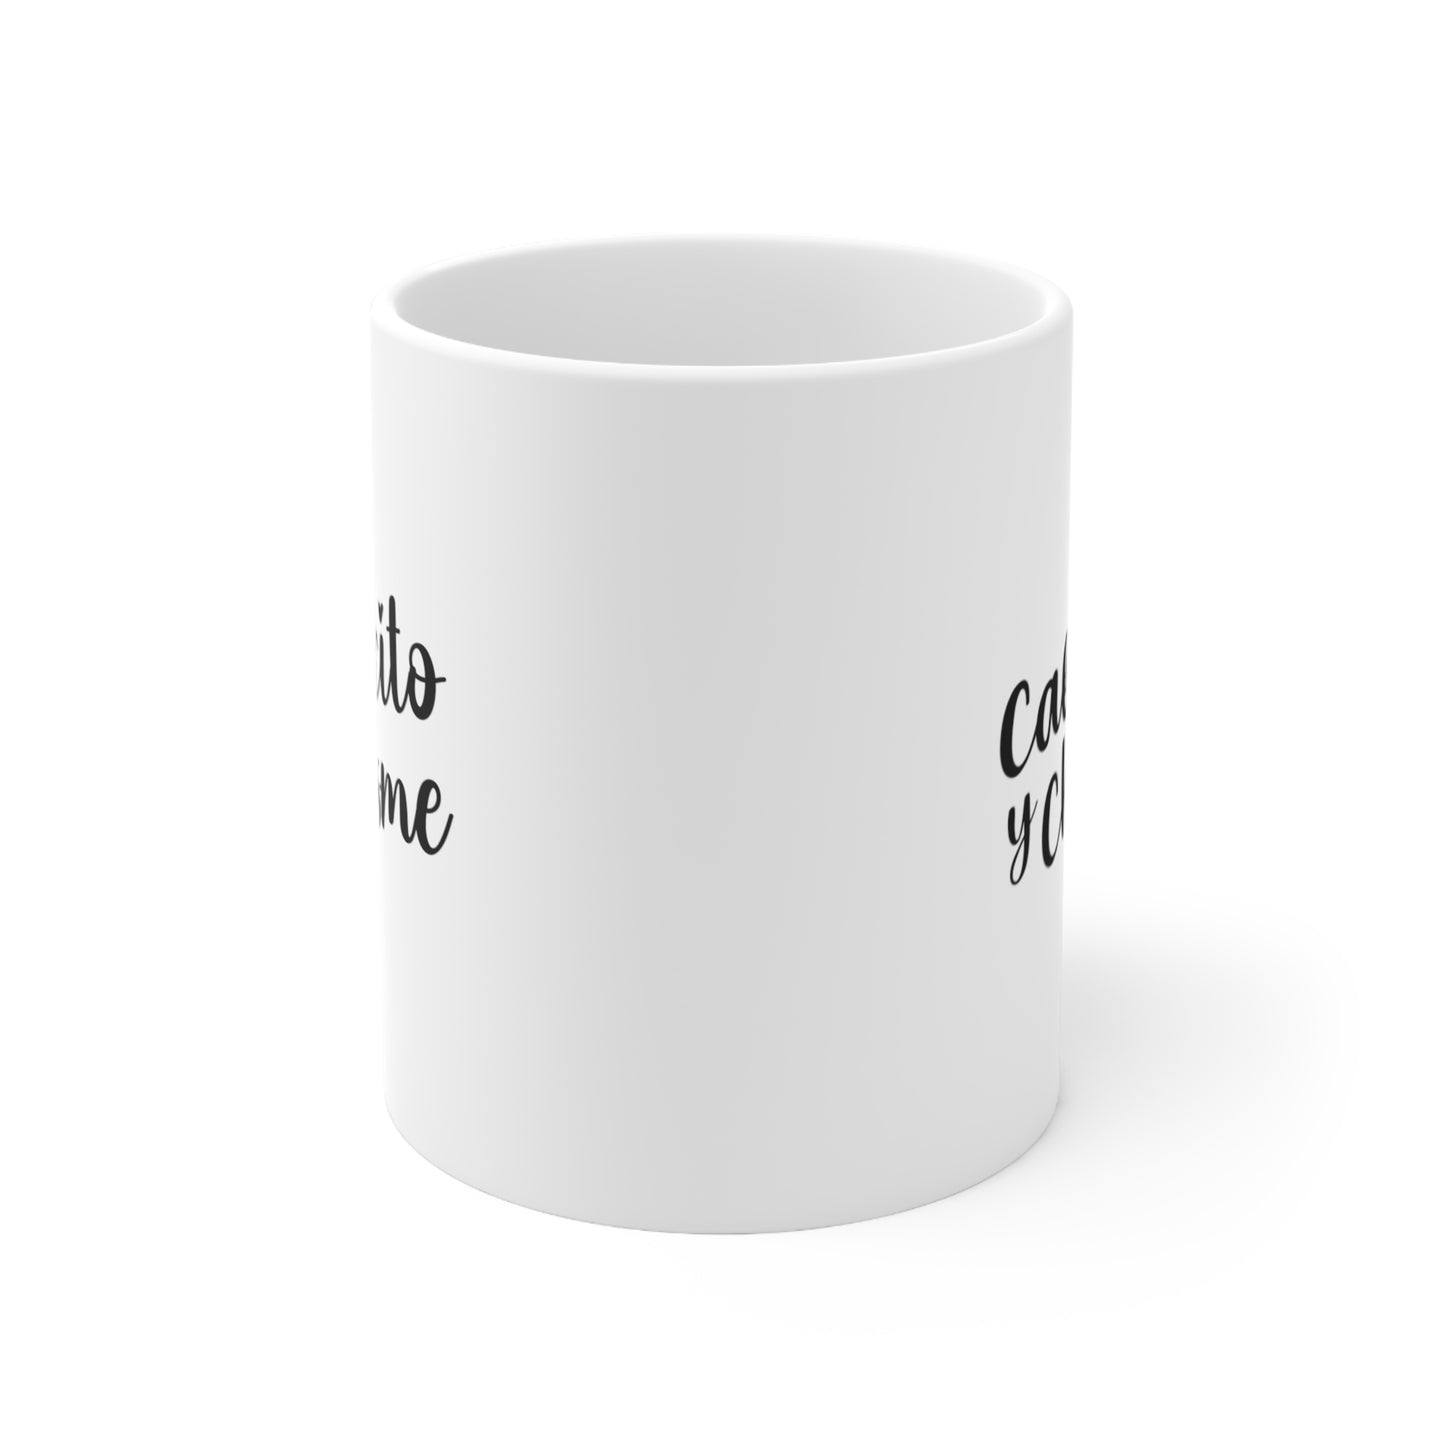 Cafecito y Chisme Coffee Mug 11oz